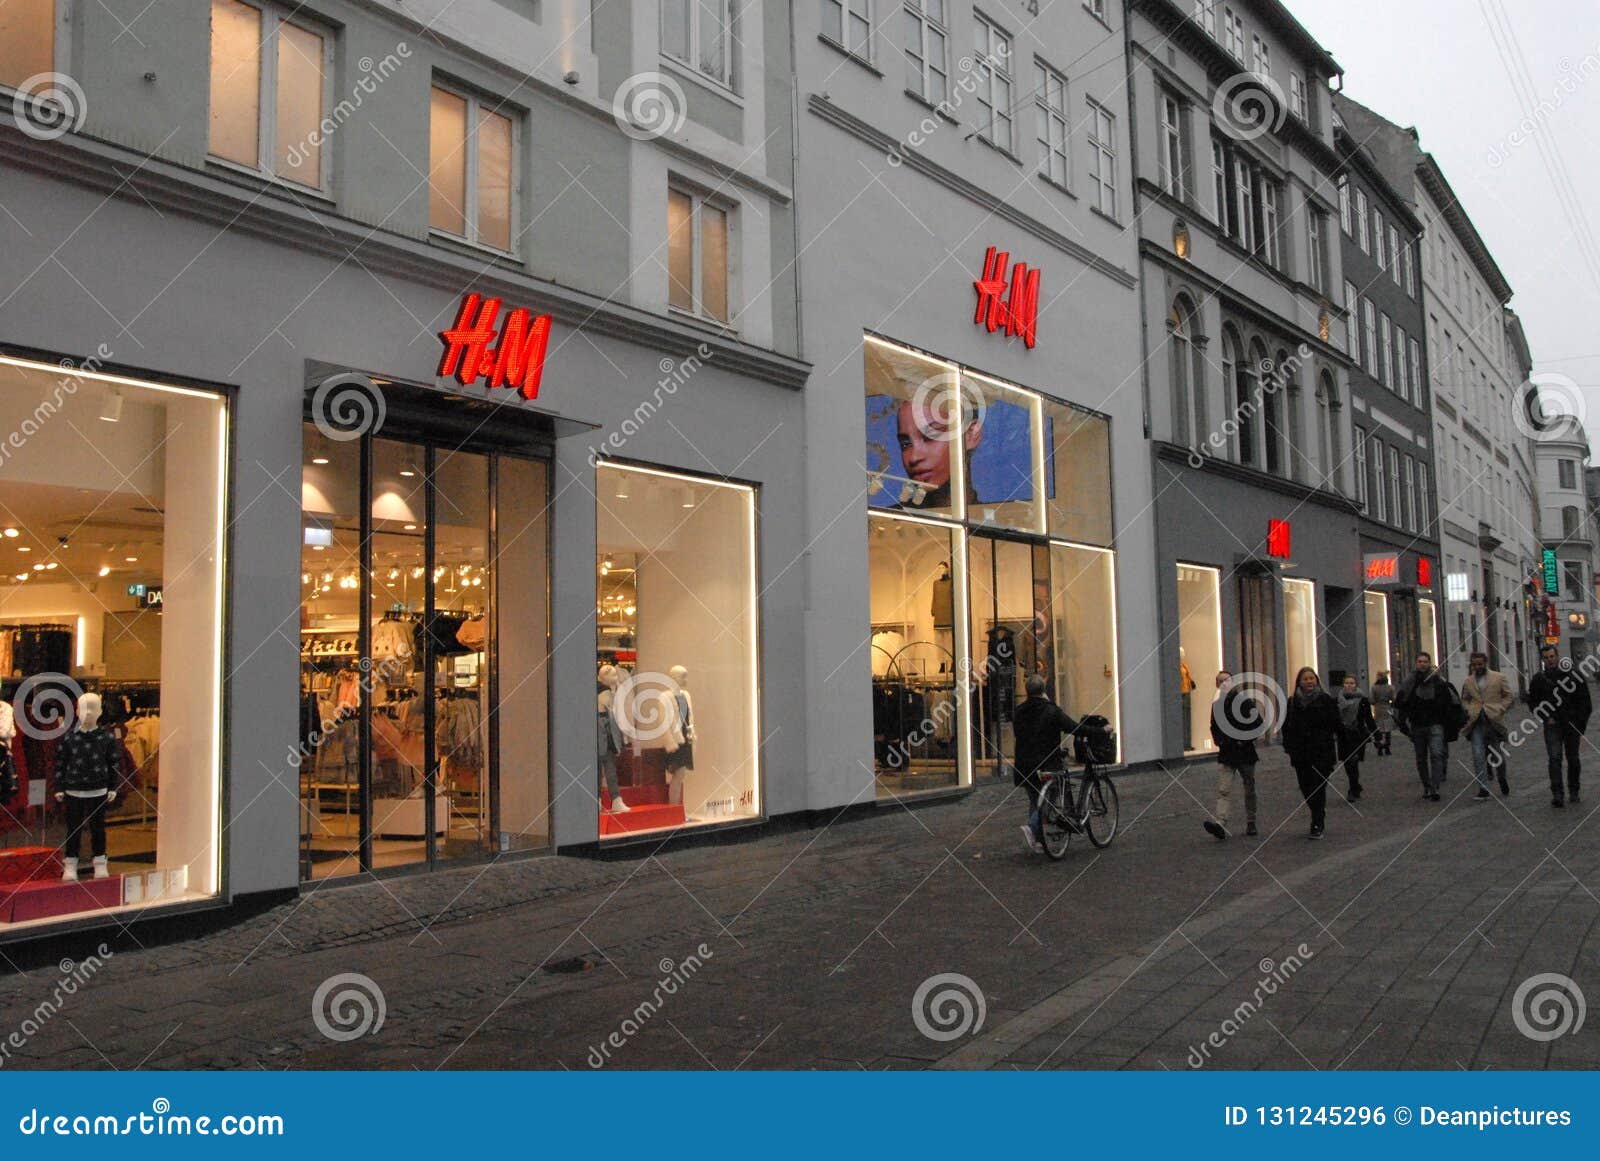 Swedish Retail Store H&M Copenhagen Denmark Editorial Photo Image of news, danmark: 131245296